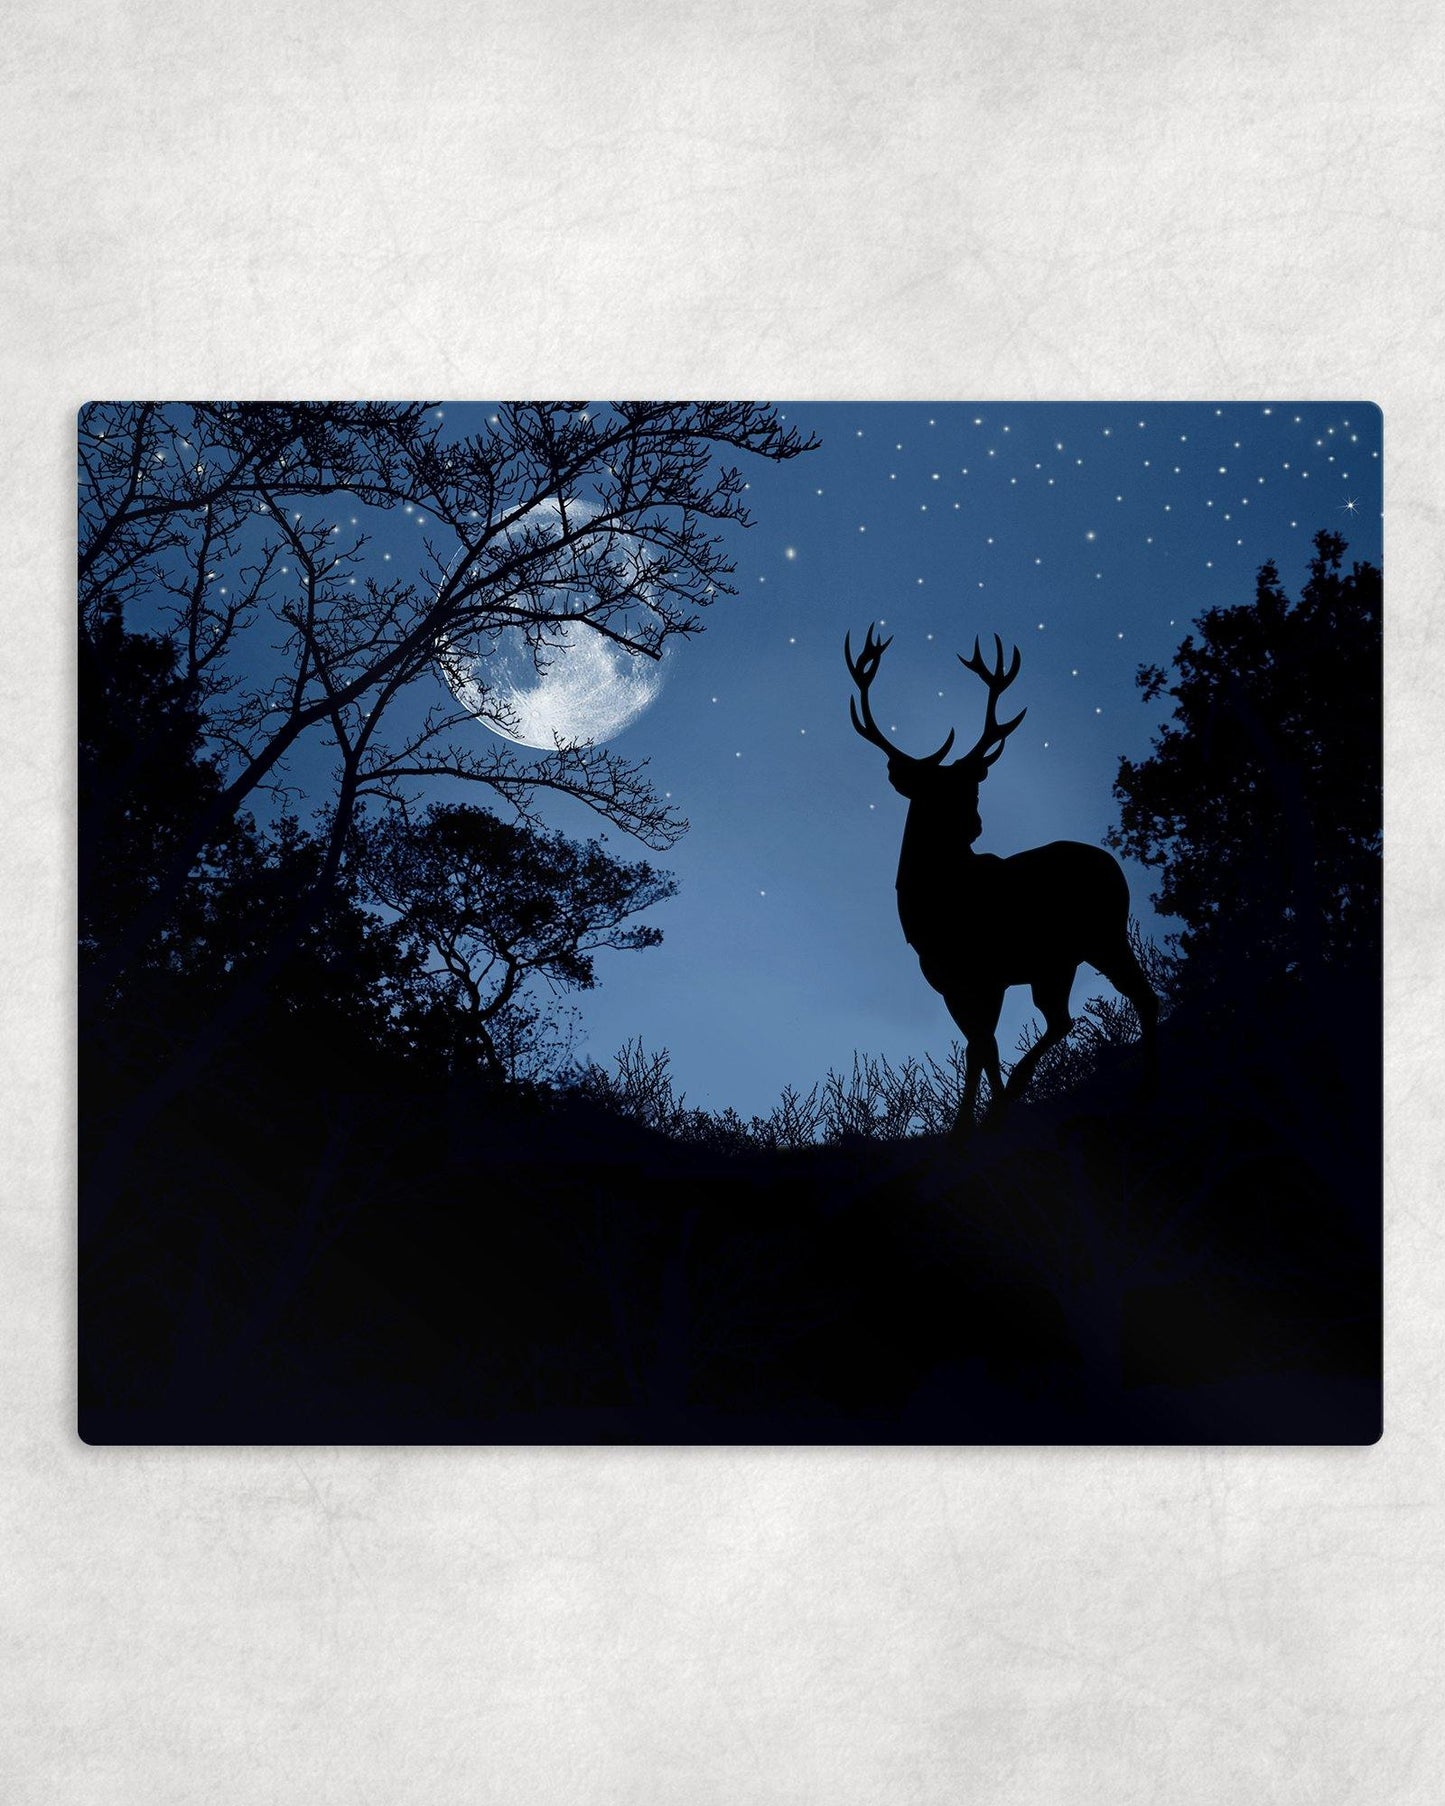 Deer by Moonlight Metal Photo Panel - 8x10 - Schoppix Gifts